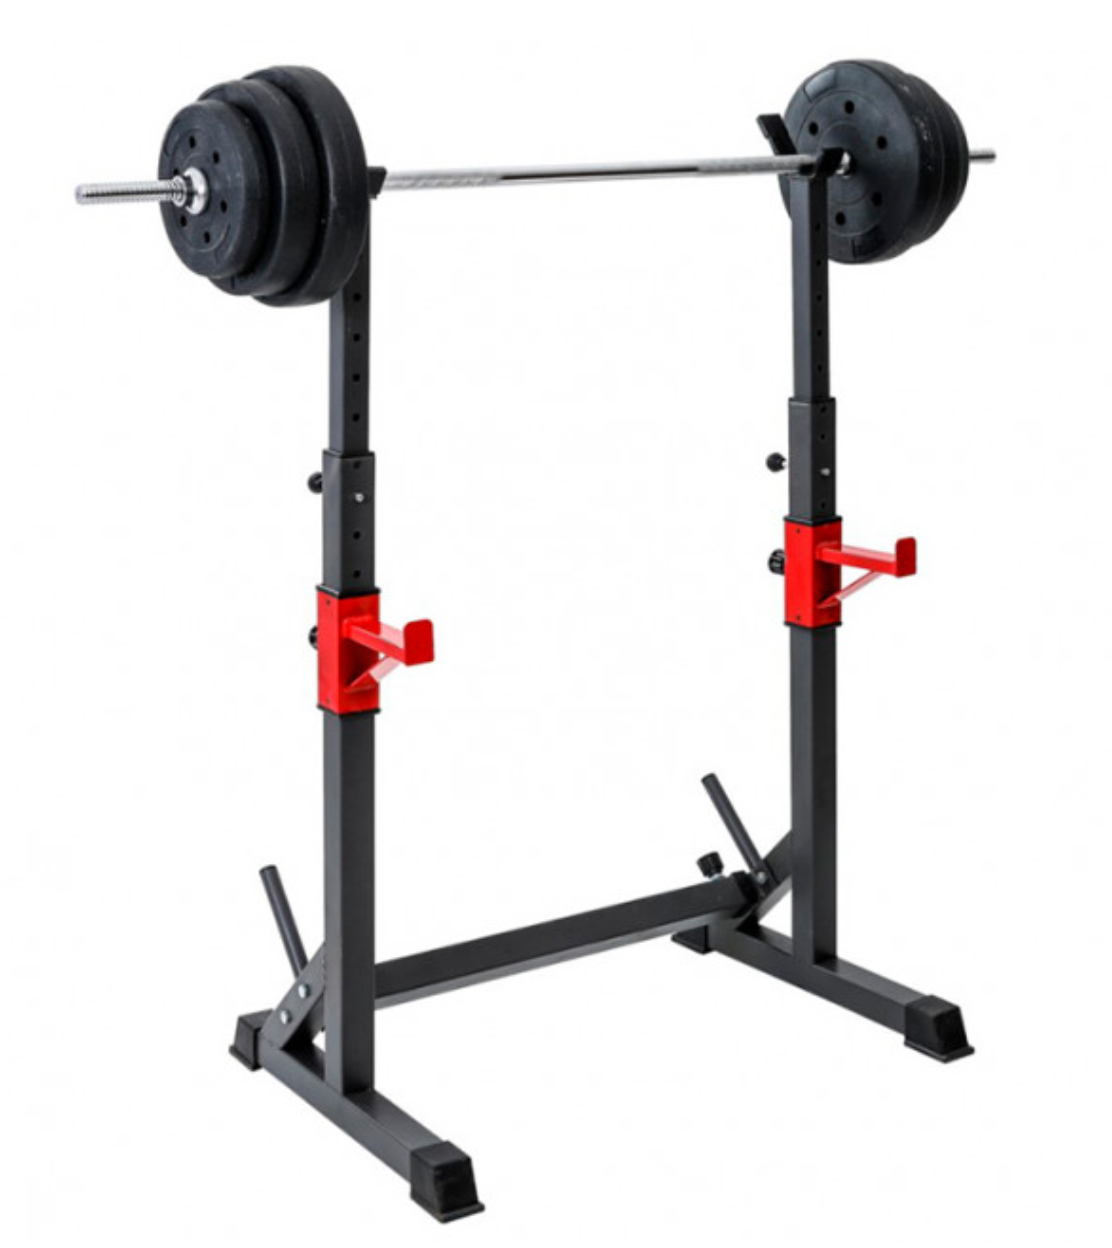 SSLine - Soporte de barra para sentadillas con placa de barra ajustable,  soporte de ejercicio, multifunción, para levantamiento de pesas, equipo de